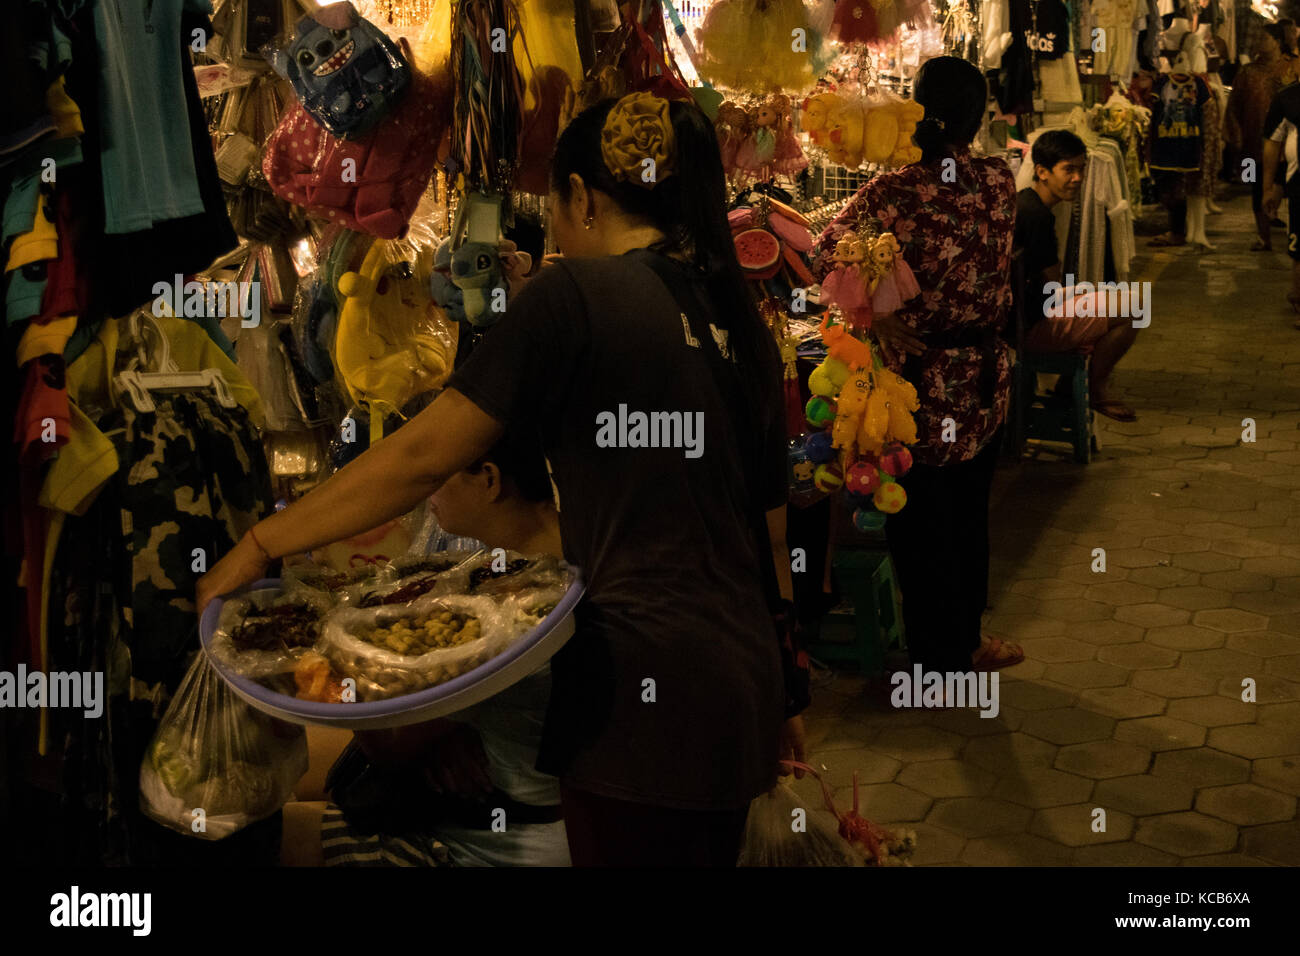 Asiatische Frau verkaufen Asiatische Fingerfood und behandelt in Phnom Penh Nacht Markt, mit einer Frau an ihrer Kleidung Stall, neben einem Spielzeug. Kambodscha Stockfoto